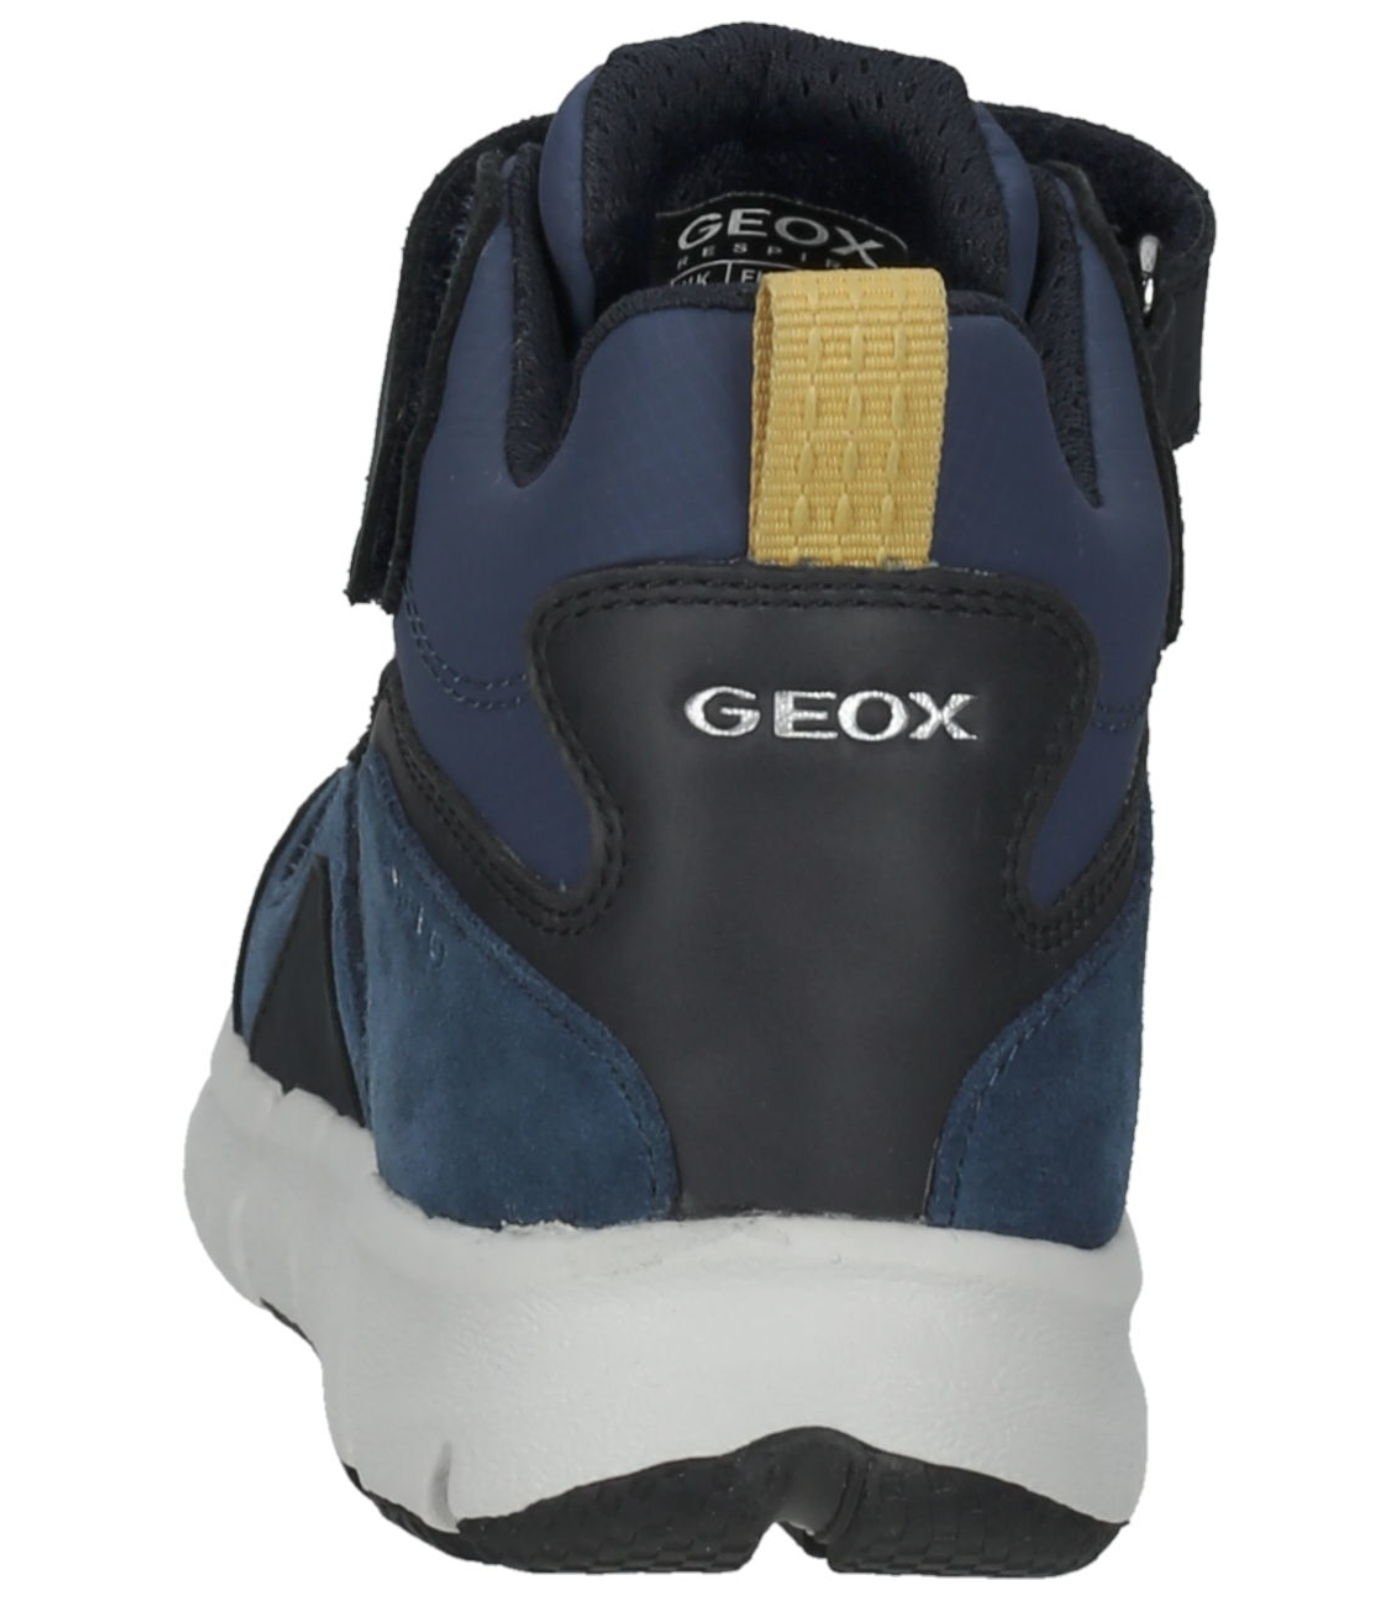 Geox Stiefelette Leder/Textil Schnürstiefelette Navy